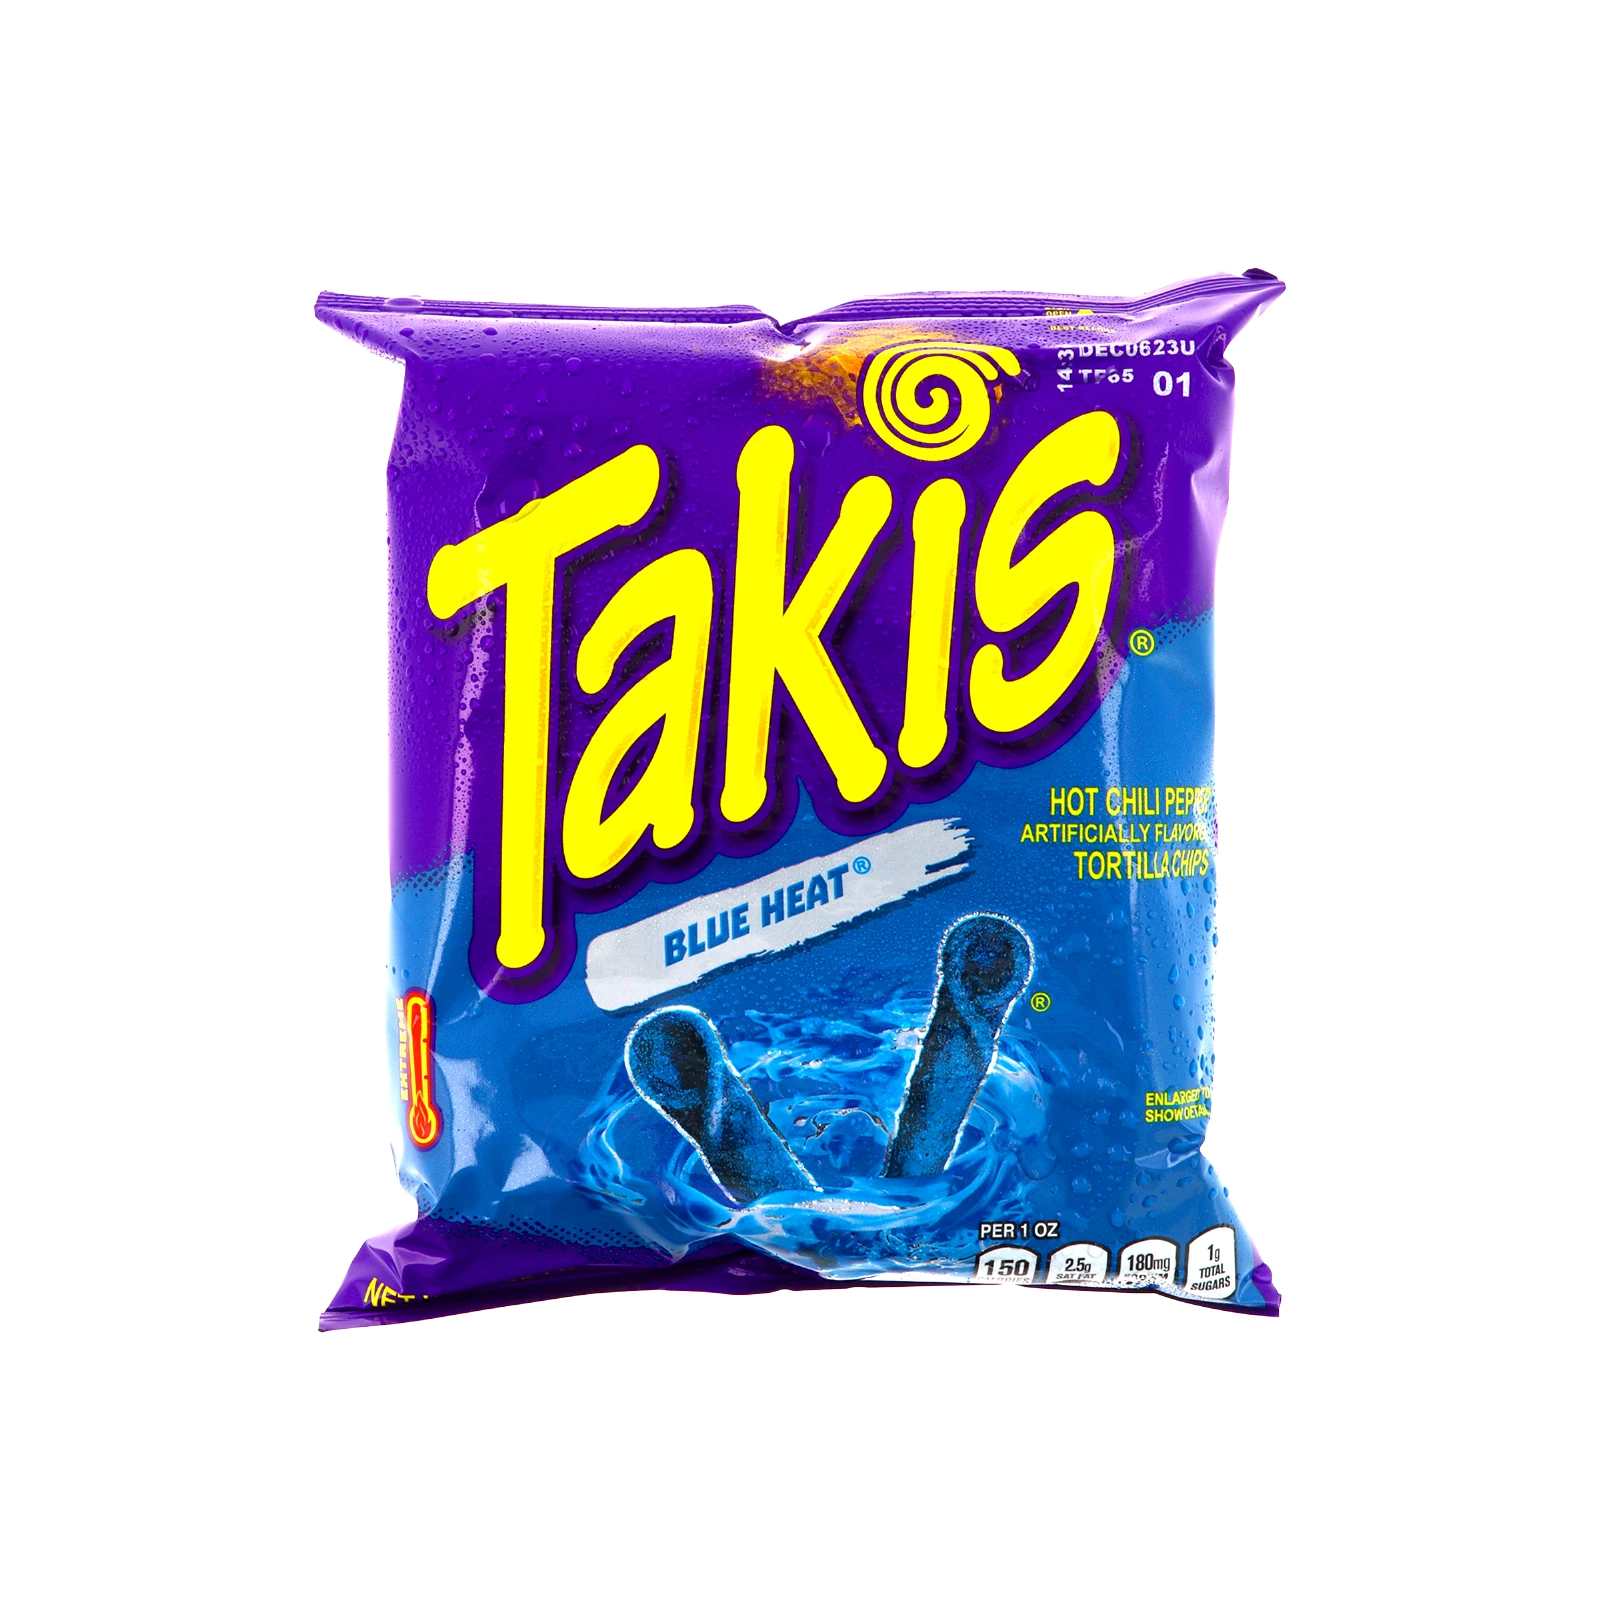 Takis - Blue Heat - 92,3 g | Chili & Lime - Special Edition Tortilla Chips günstig online kaufen - Hookain Snack-Onlineshop4